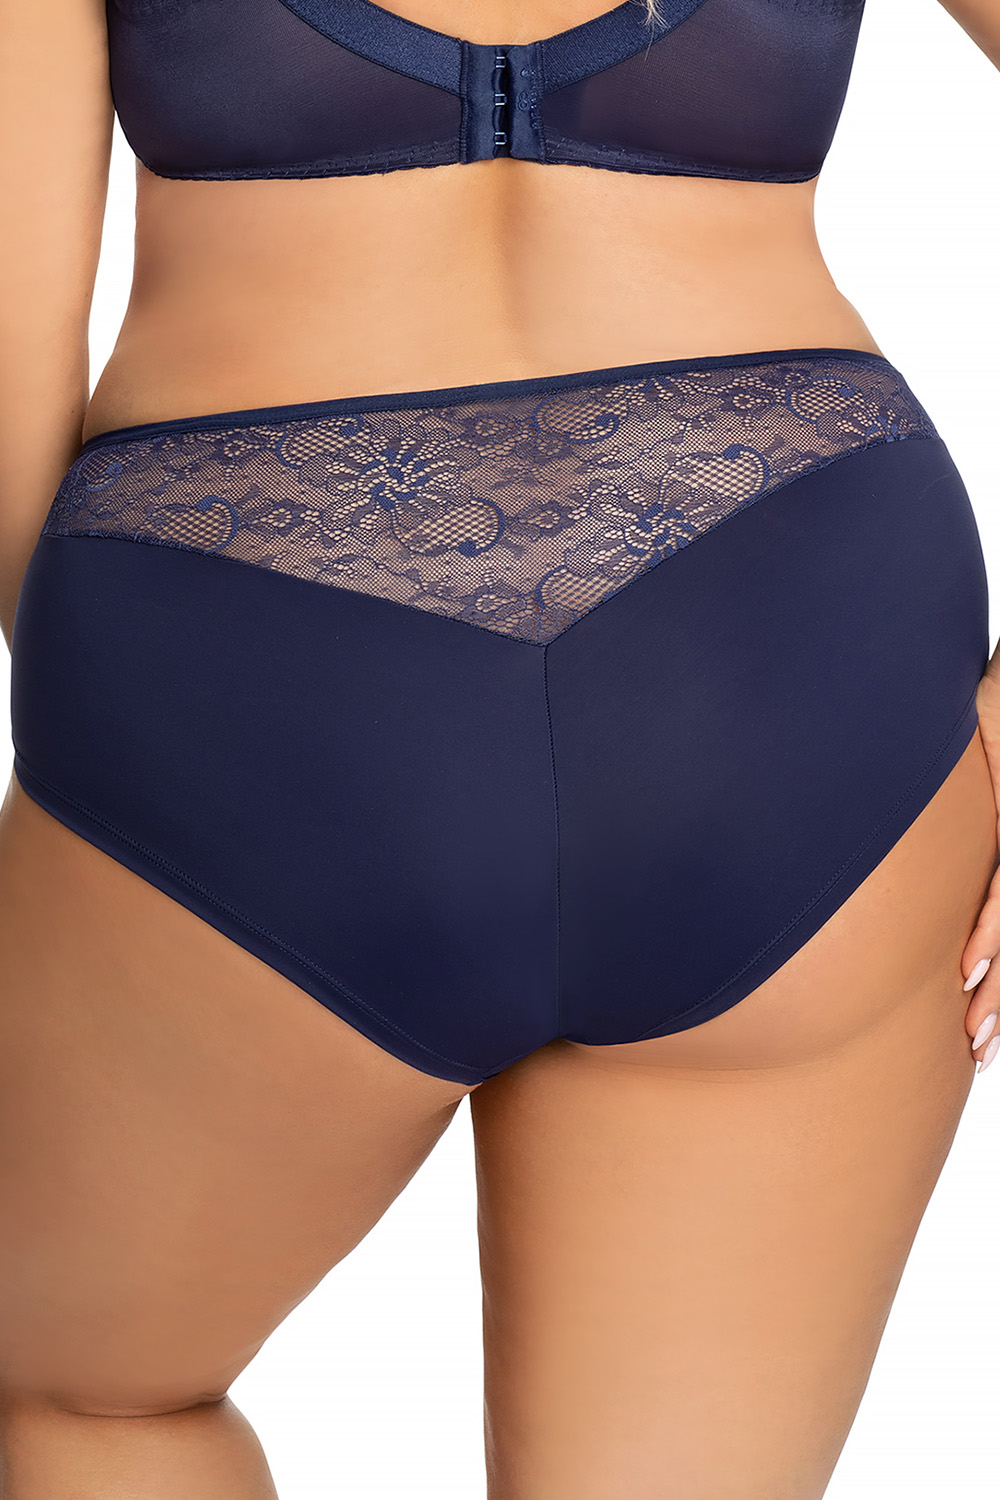 Panties model 172147 Gorsenia Lingerie navy blue Ladies